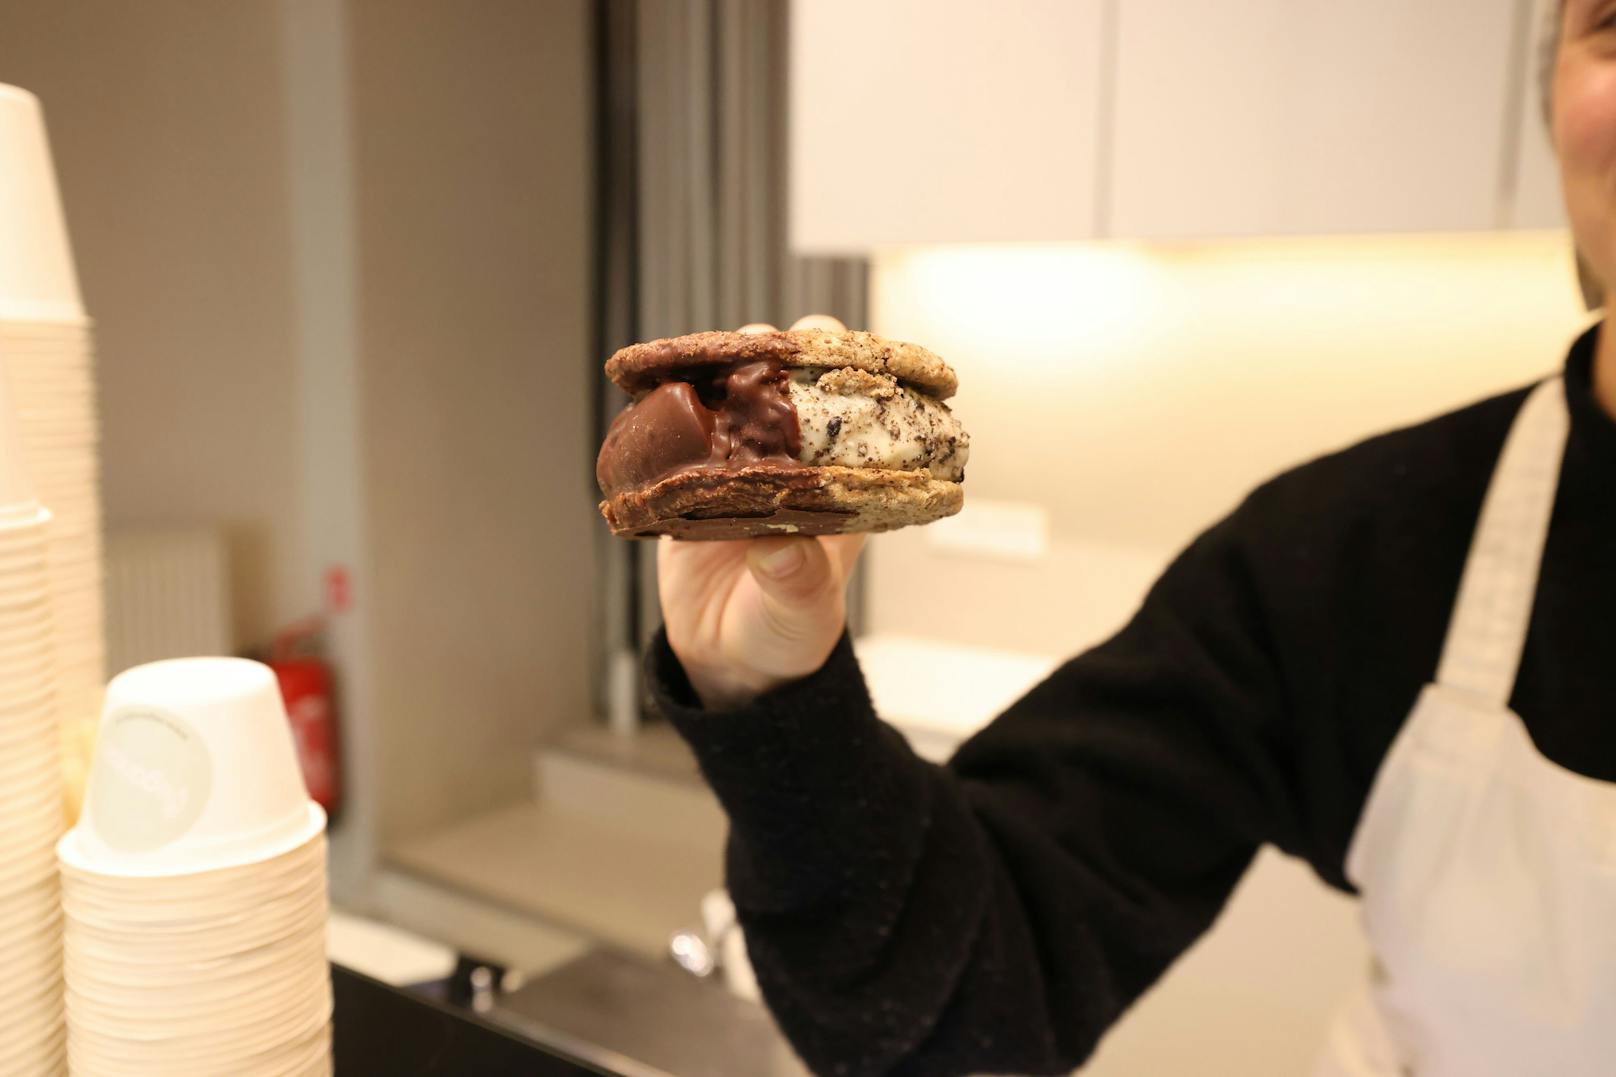 Beliebt sind auch die "Inbetwiener": Eisgefüllte Cookie-Sandwiches.